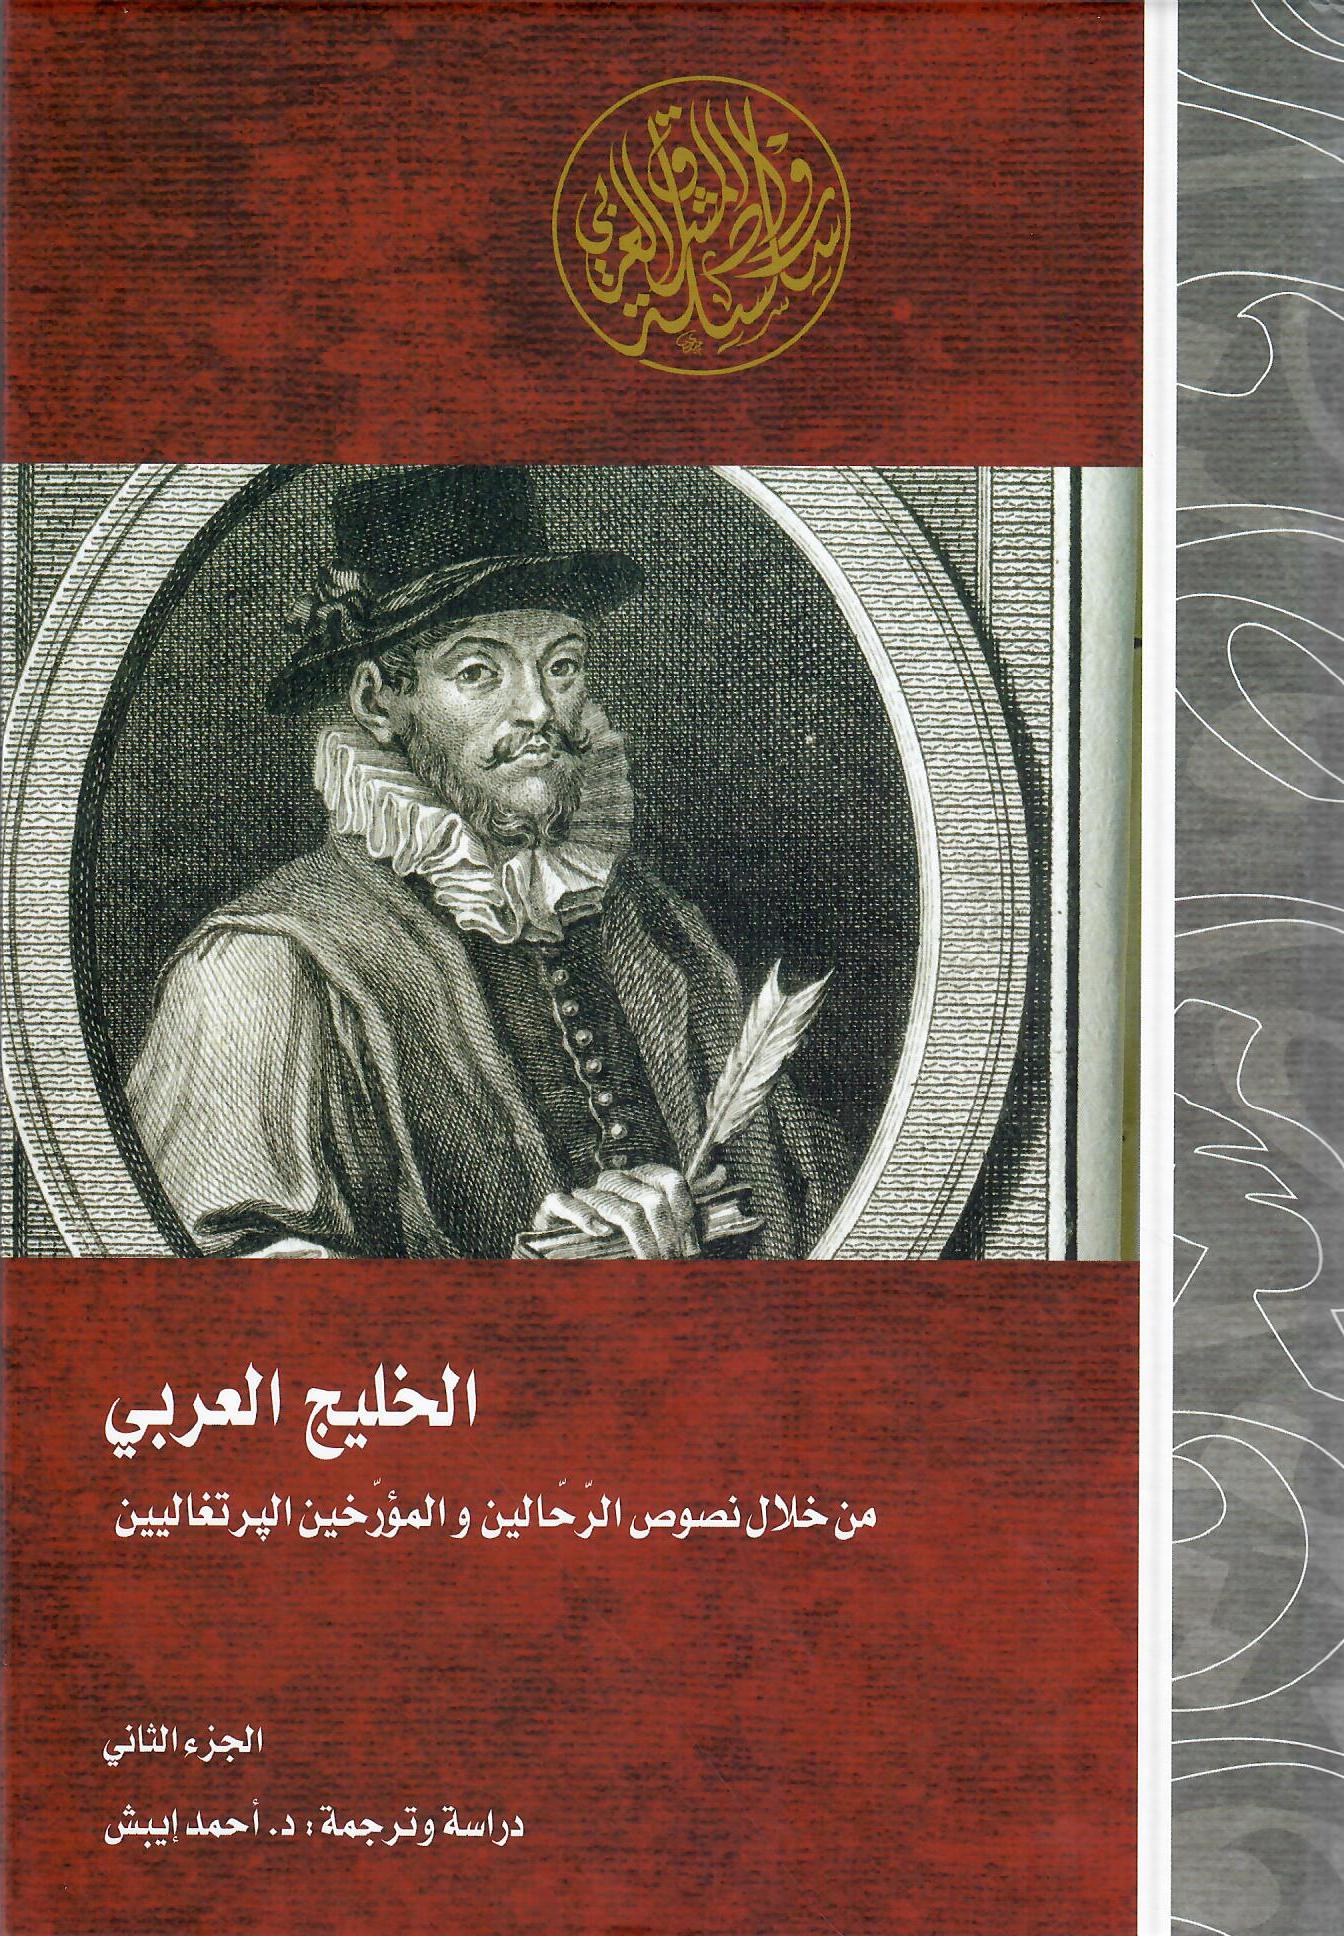 الخليج العربي من خلال نصوص الرحالين والمؤرخين البرتغاليين الجزء الثاني